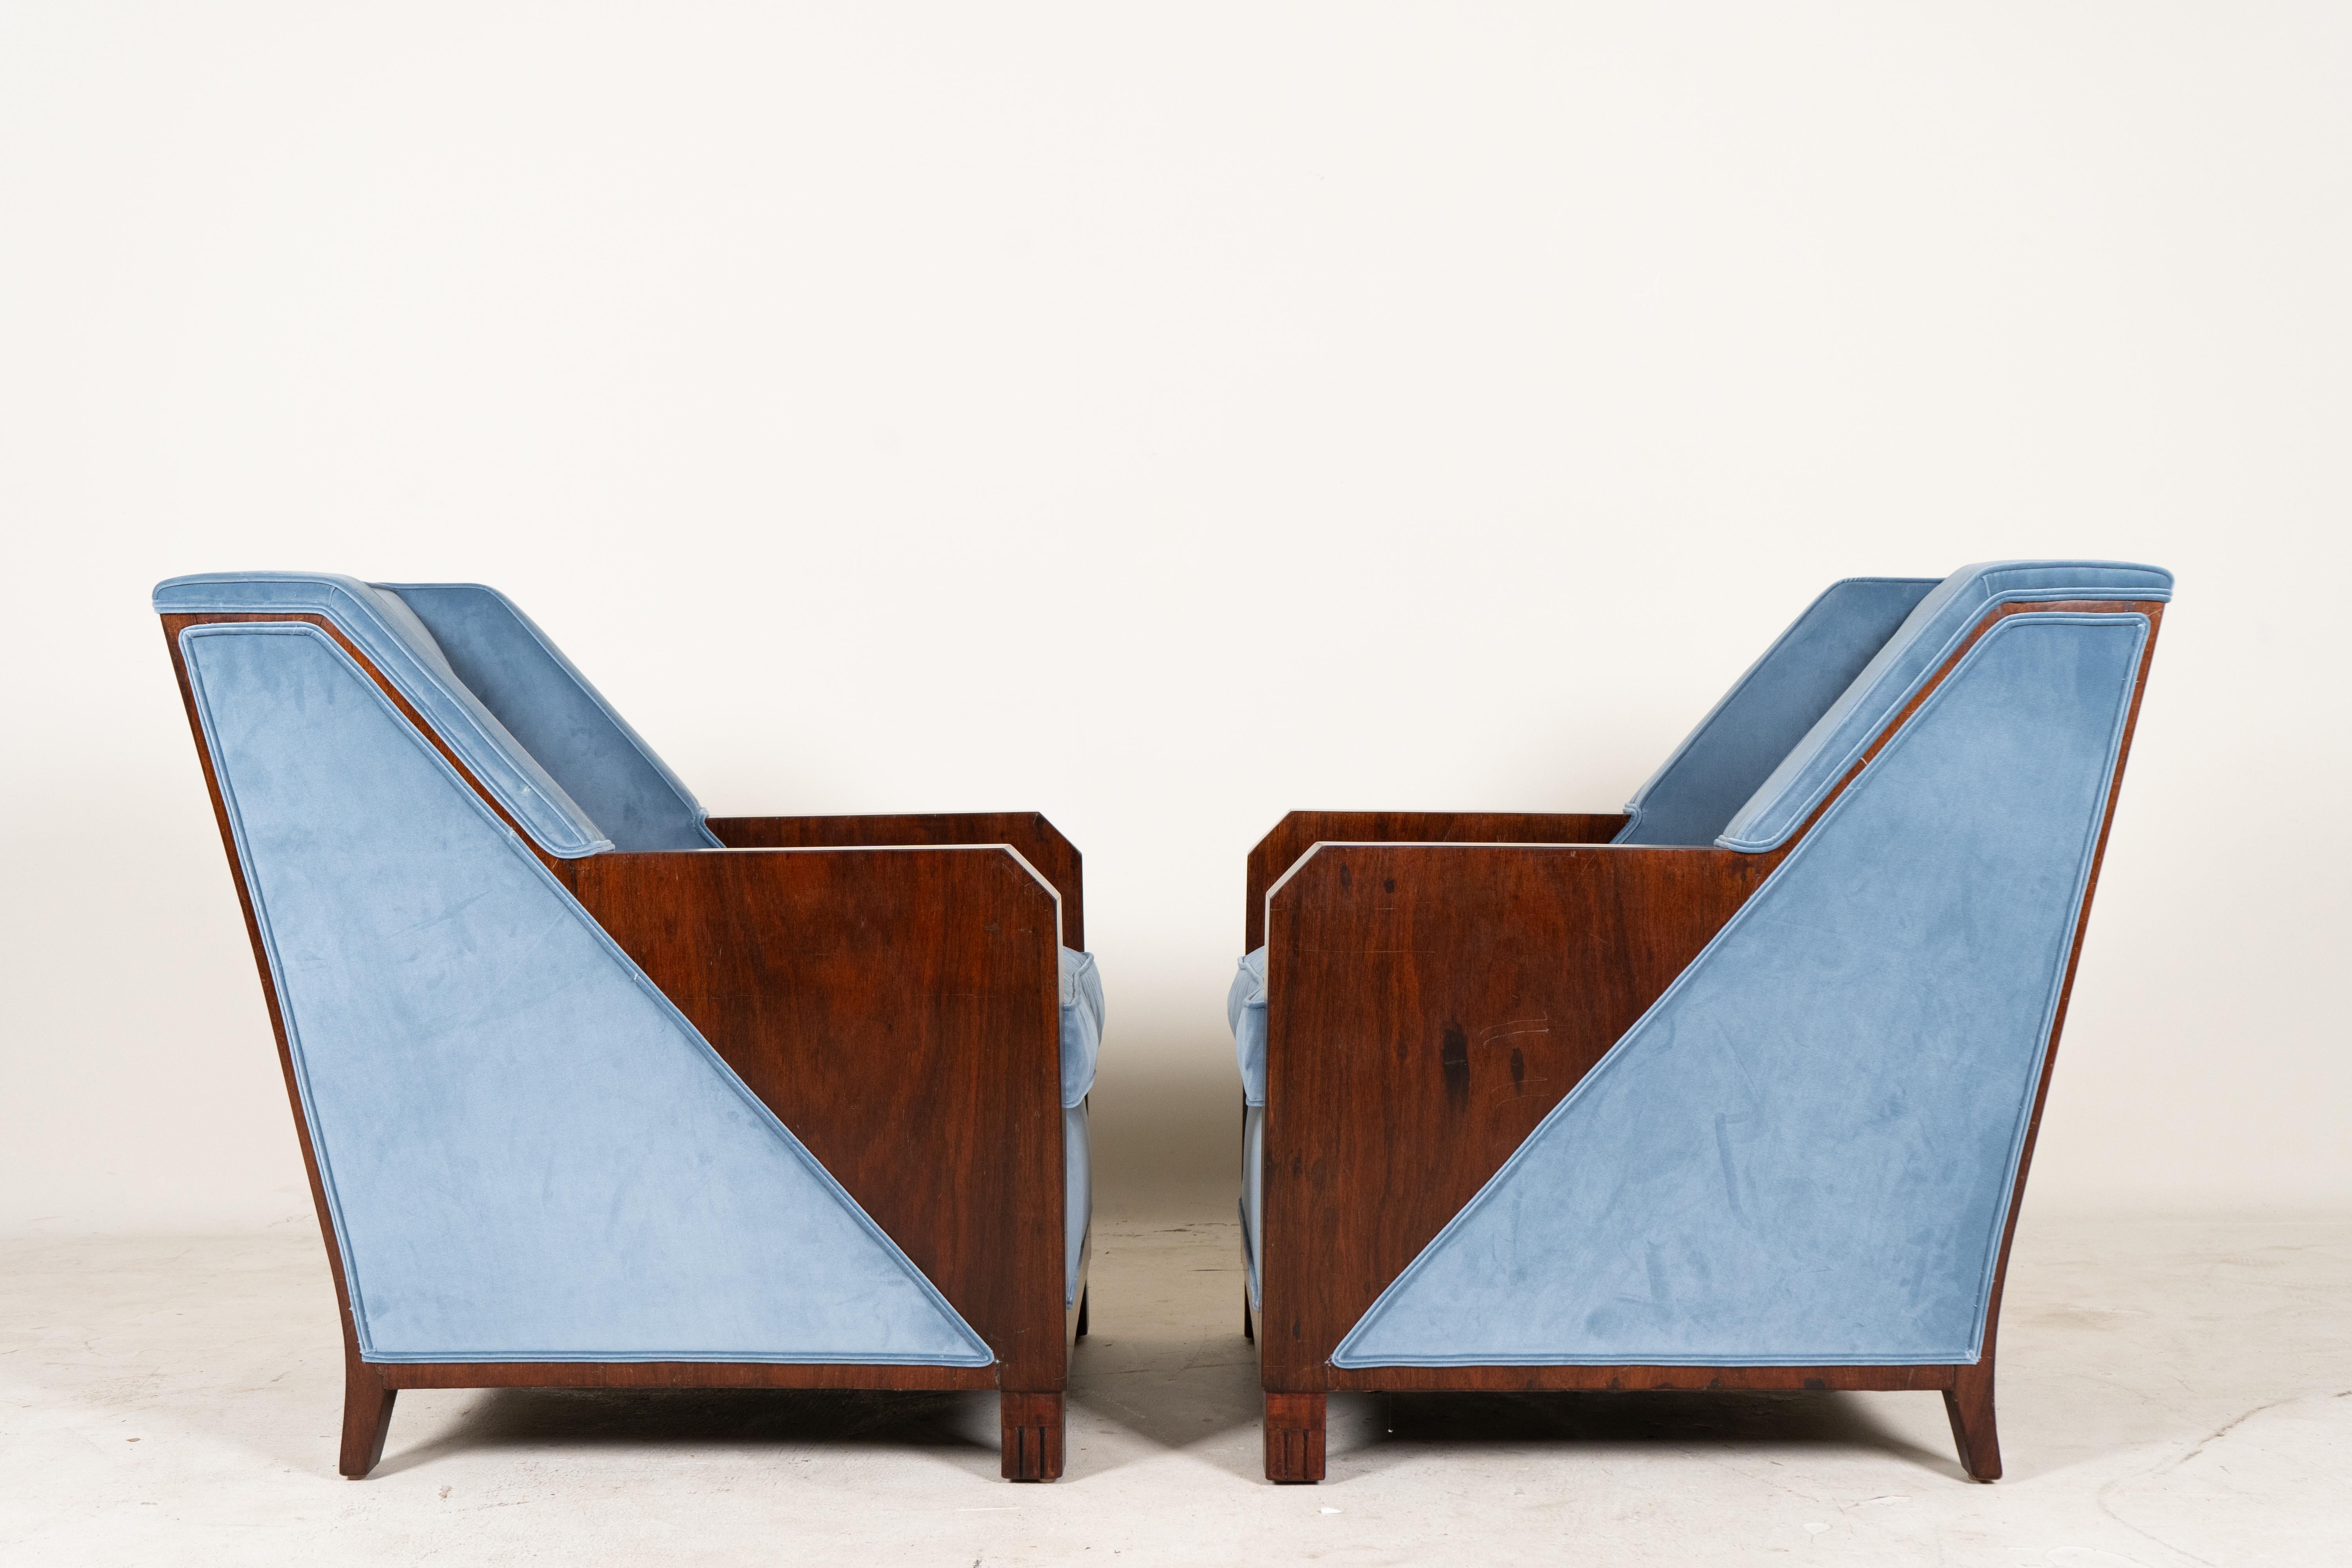 
Ces chaises d'Andre Domin et de Marcel Genevriere pour la Maison Dominique sont d'excellents exemples du design du milieu du siècle, datant de la fin des années 1940. Leurs lignes épurées et leur savoir-faire sophistiqué incarnent l'esthétique de